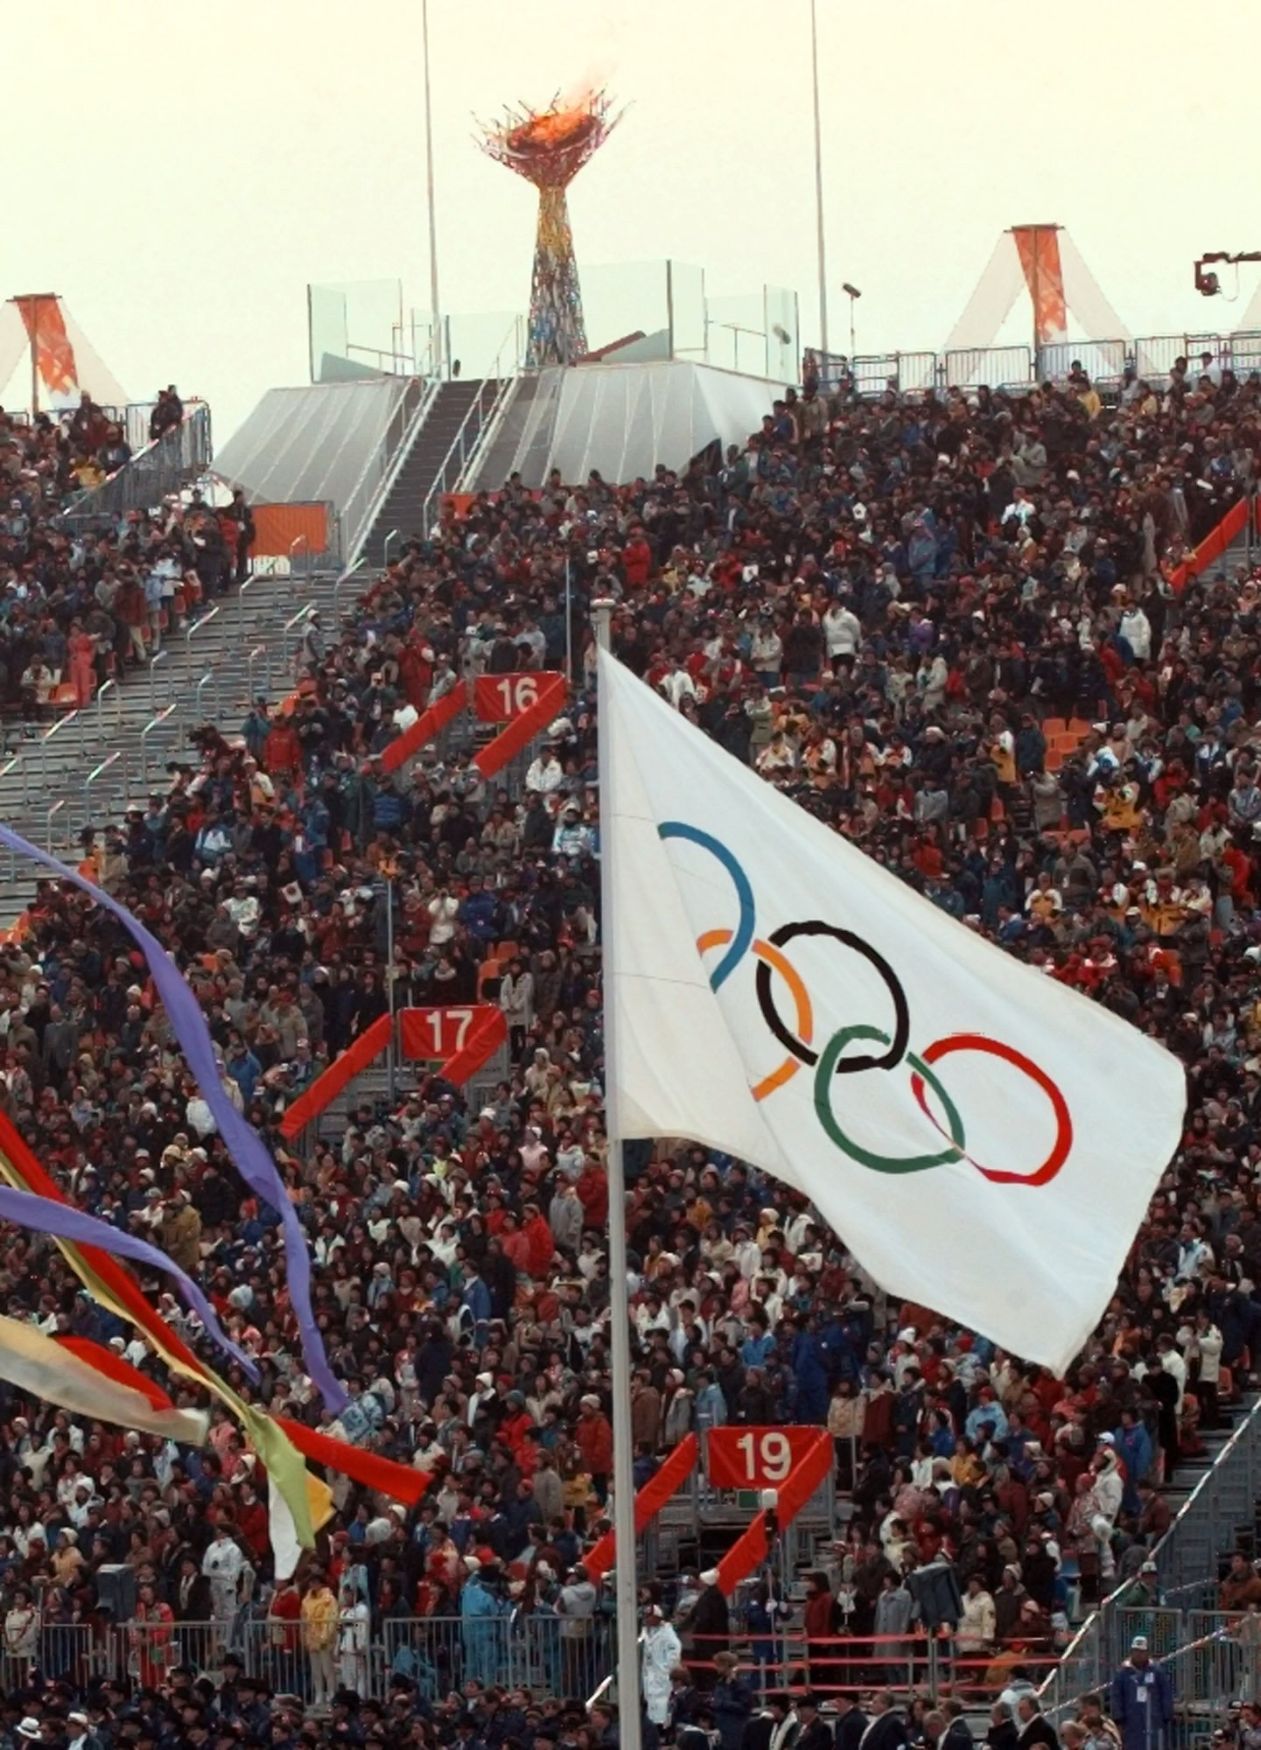 Olympijské hry v Naganu 1998